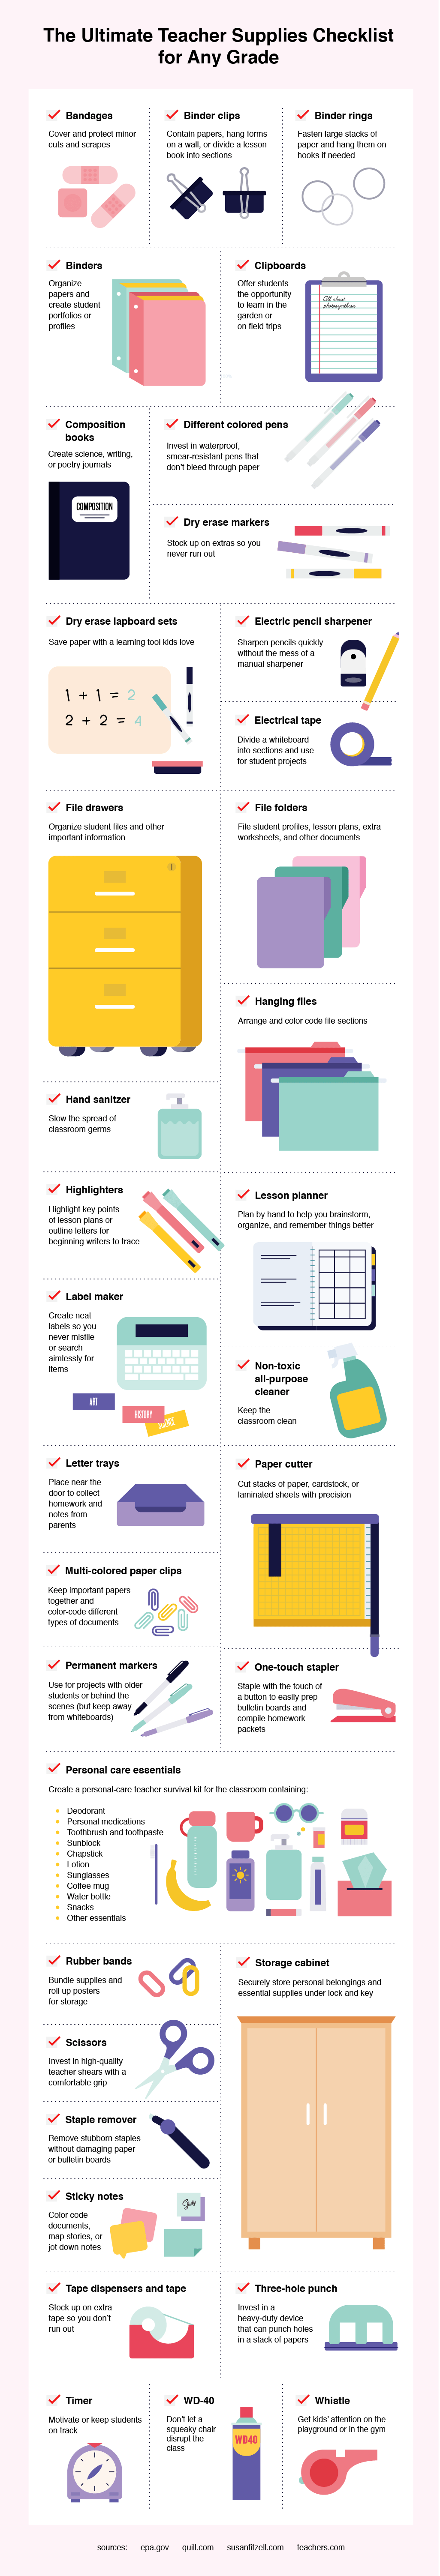 Checklist of Supplies